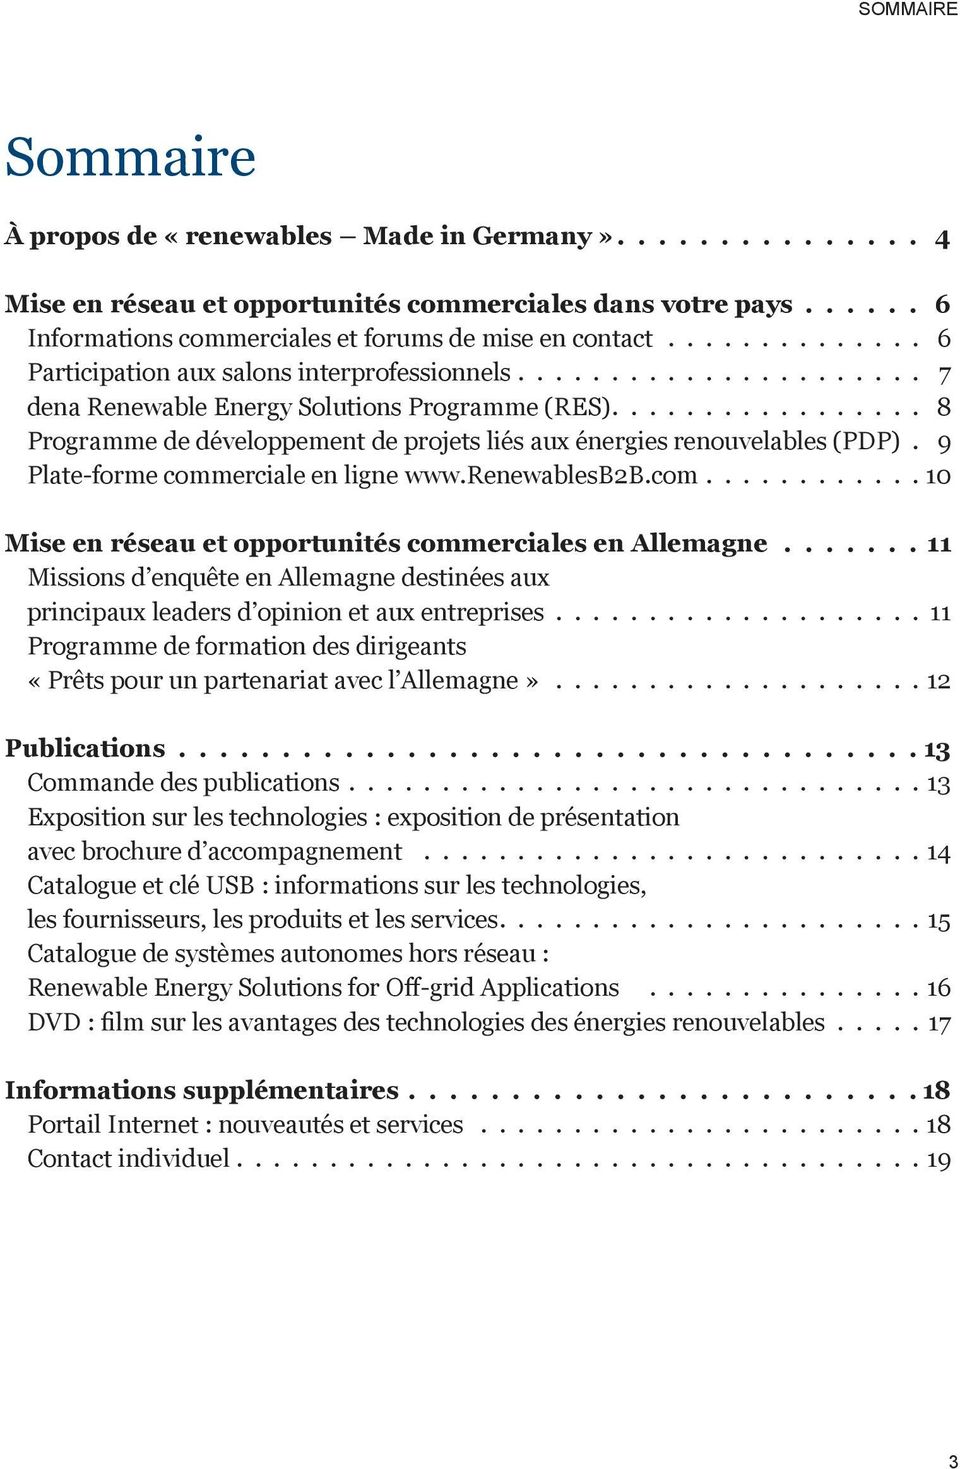 ................ 8 Programme de développement de projets liés aux énergies renouvelables (PDP). 9 Plate-forme commerciale en ligne www.renewablesb2b.com............10 Mise en réseau et opportunités commerciales en Allemagne.